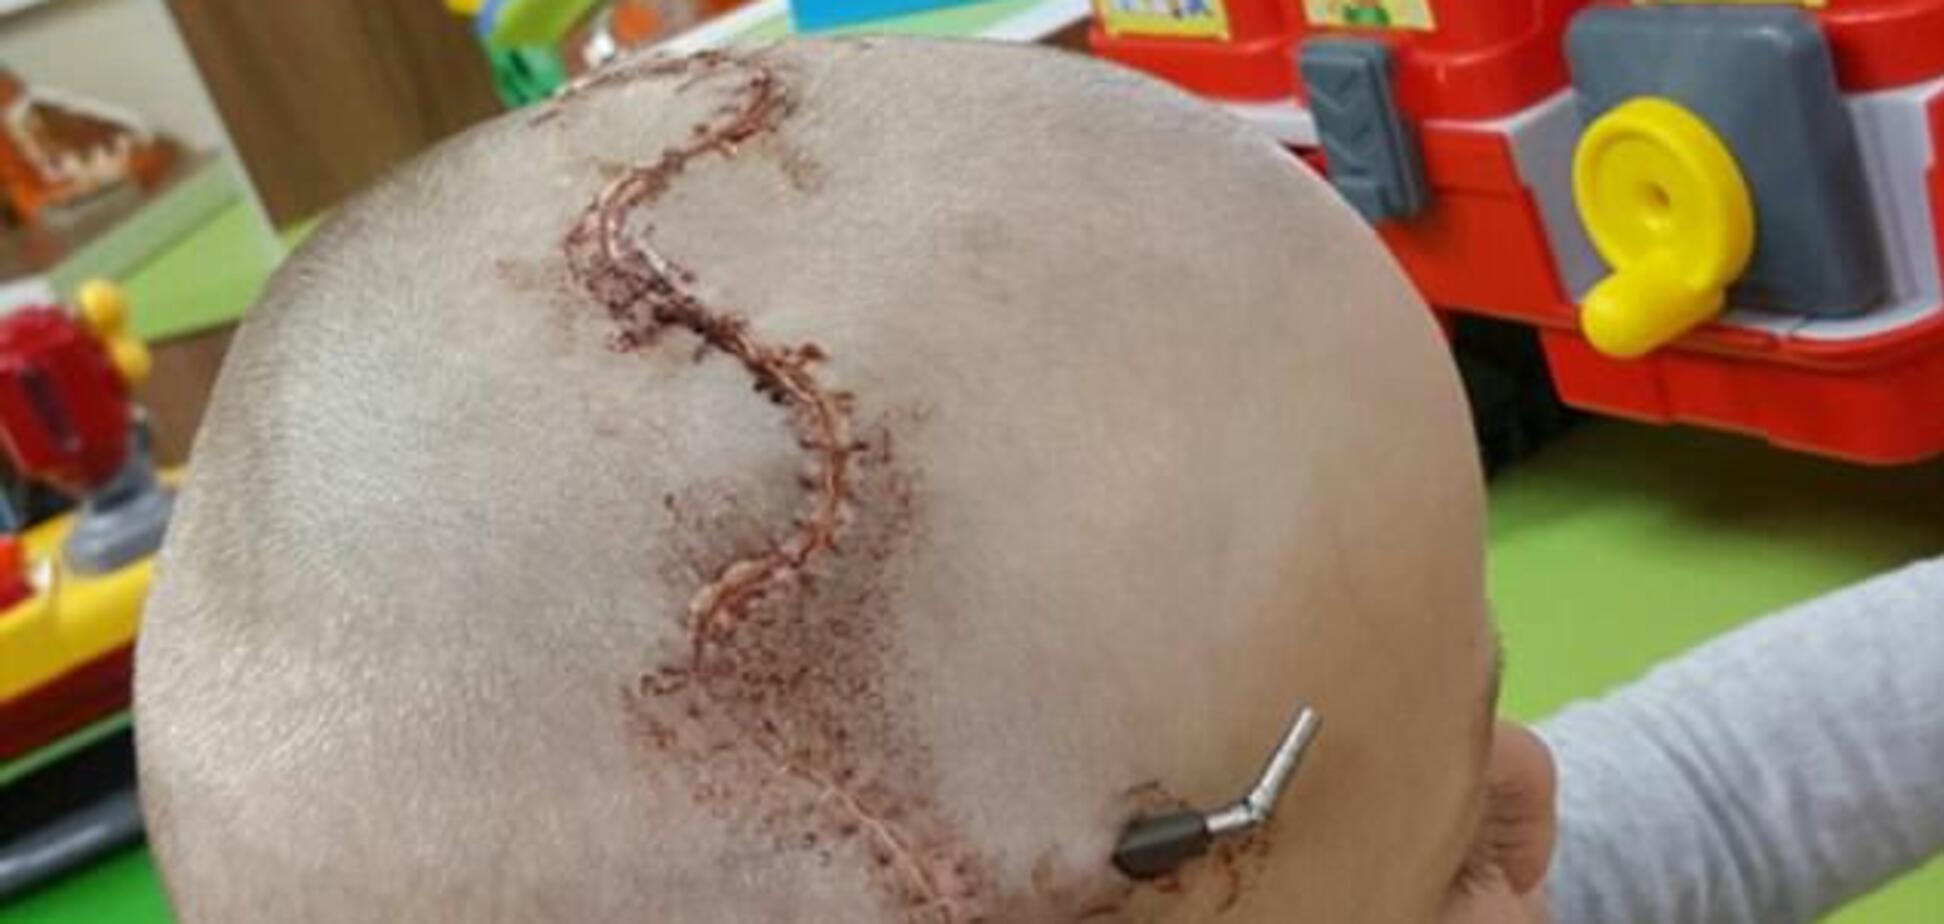 Собрали череп, как головоломку: 5-летнему мальчику провели опаснейшую операцию